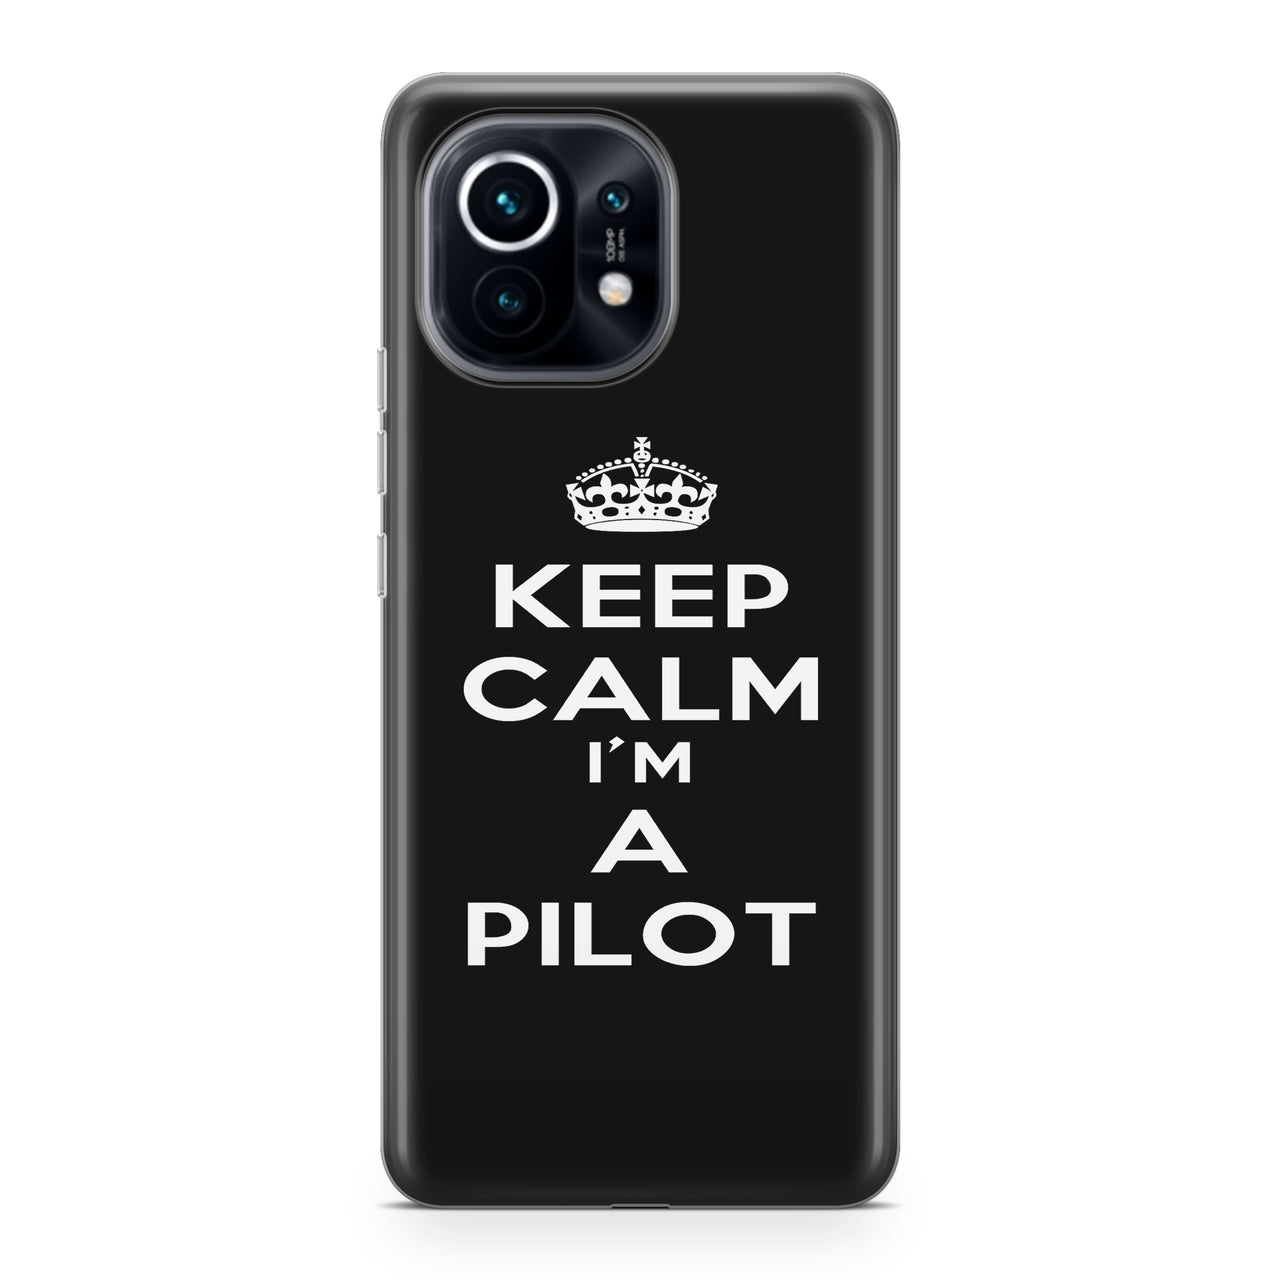 Keep Calm I'm a Pilot Designed Xiaomi Cases